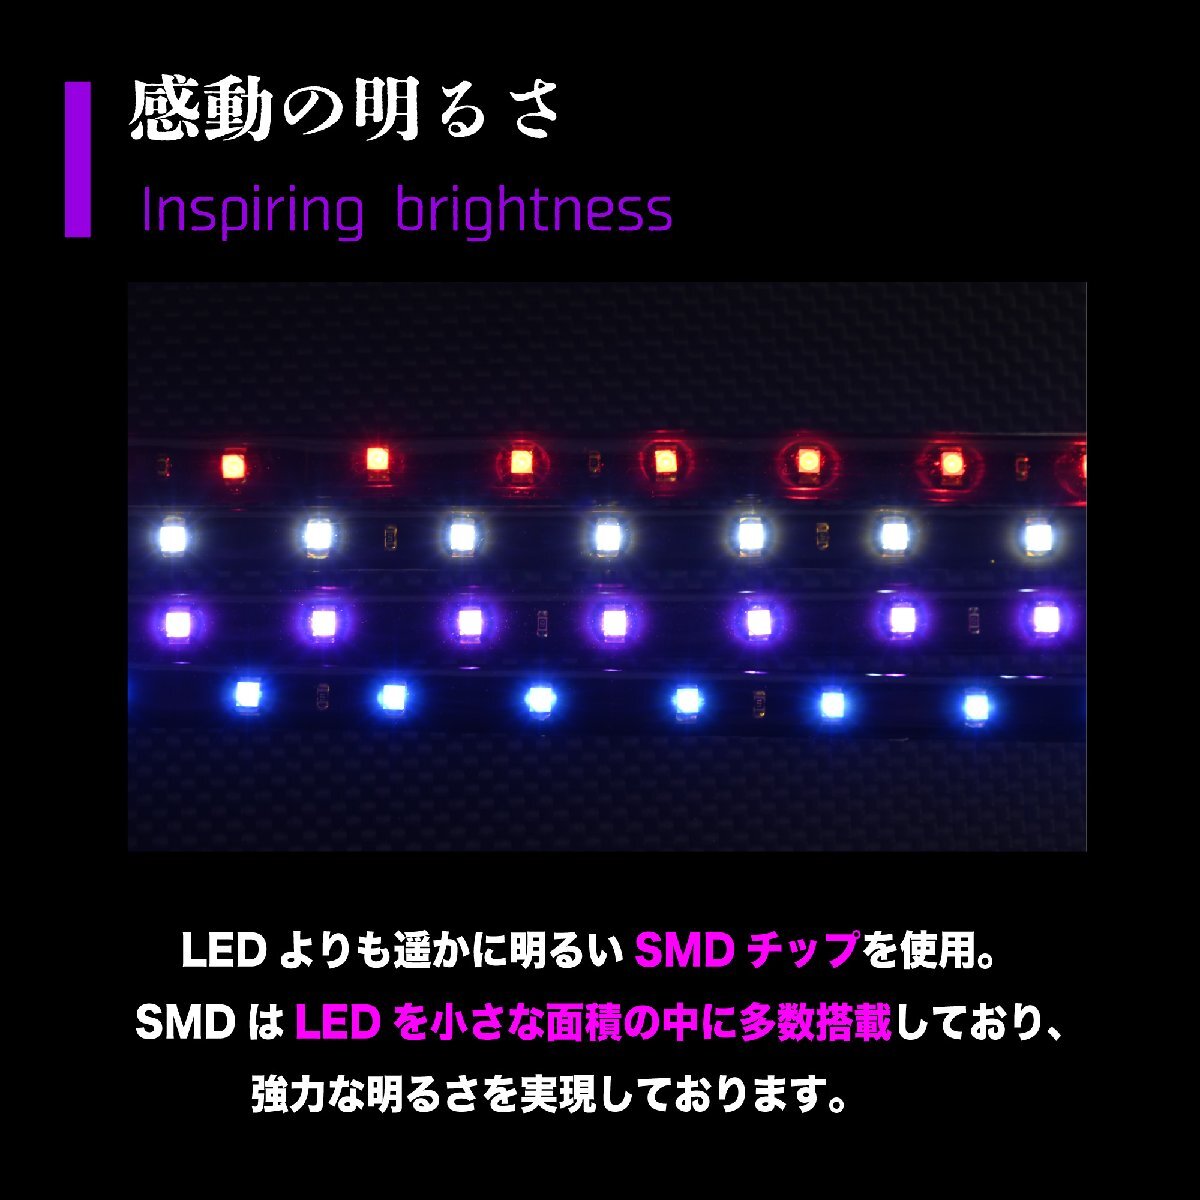 アウトレット LED テープライト ブルー 60cm 30連 黒ベース 正面発光 青 ledライト イルミネーション 12V 防水 切断可 両面テープ_画像4